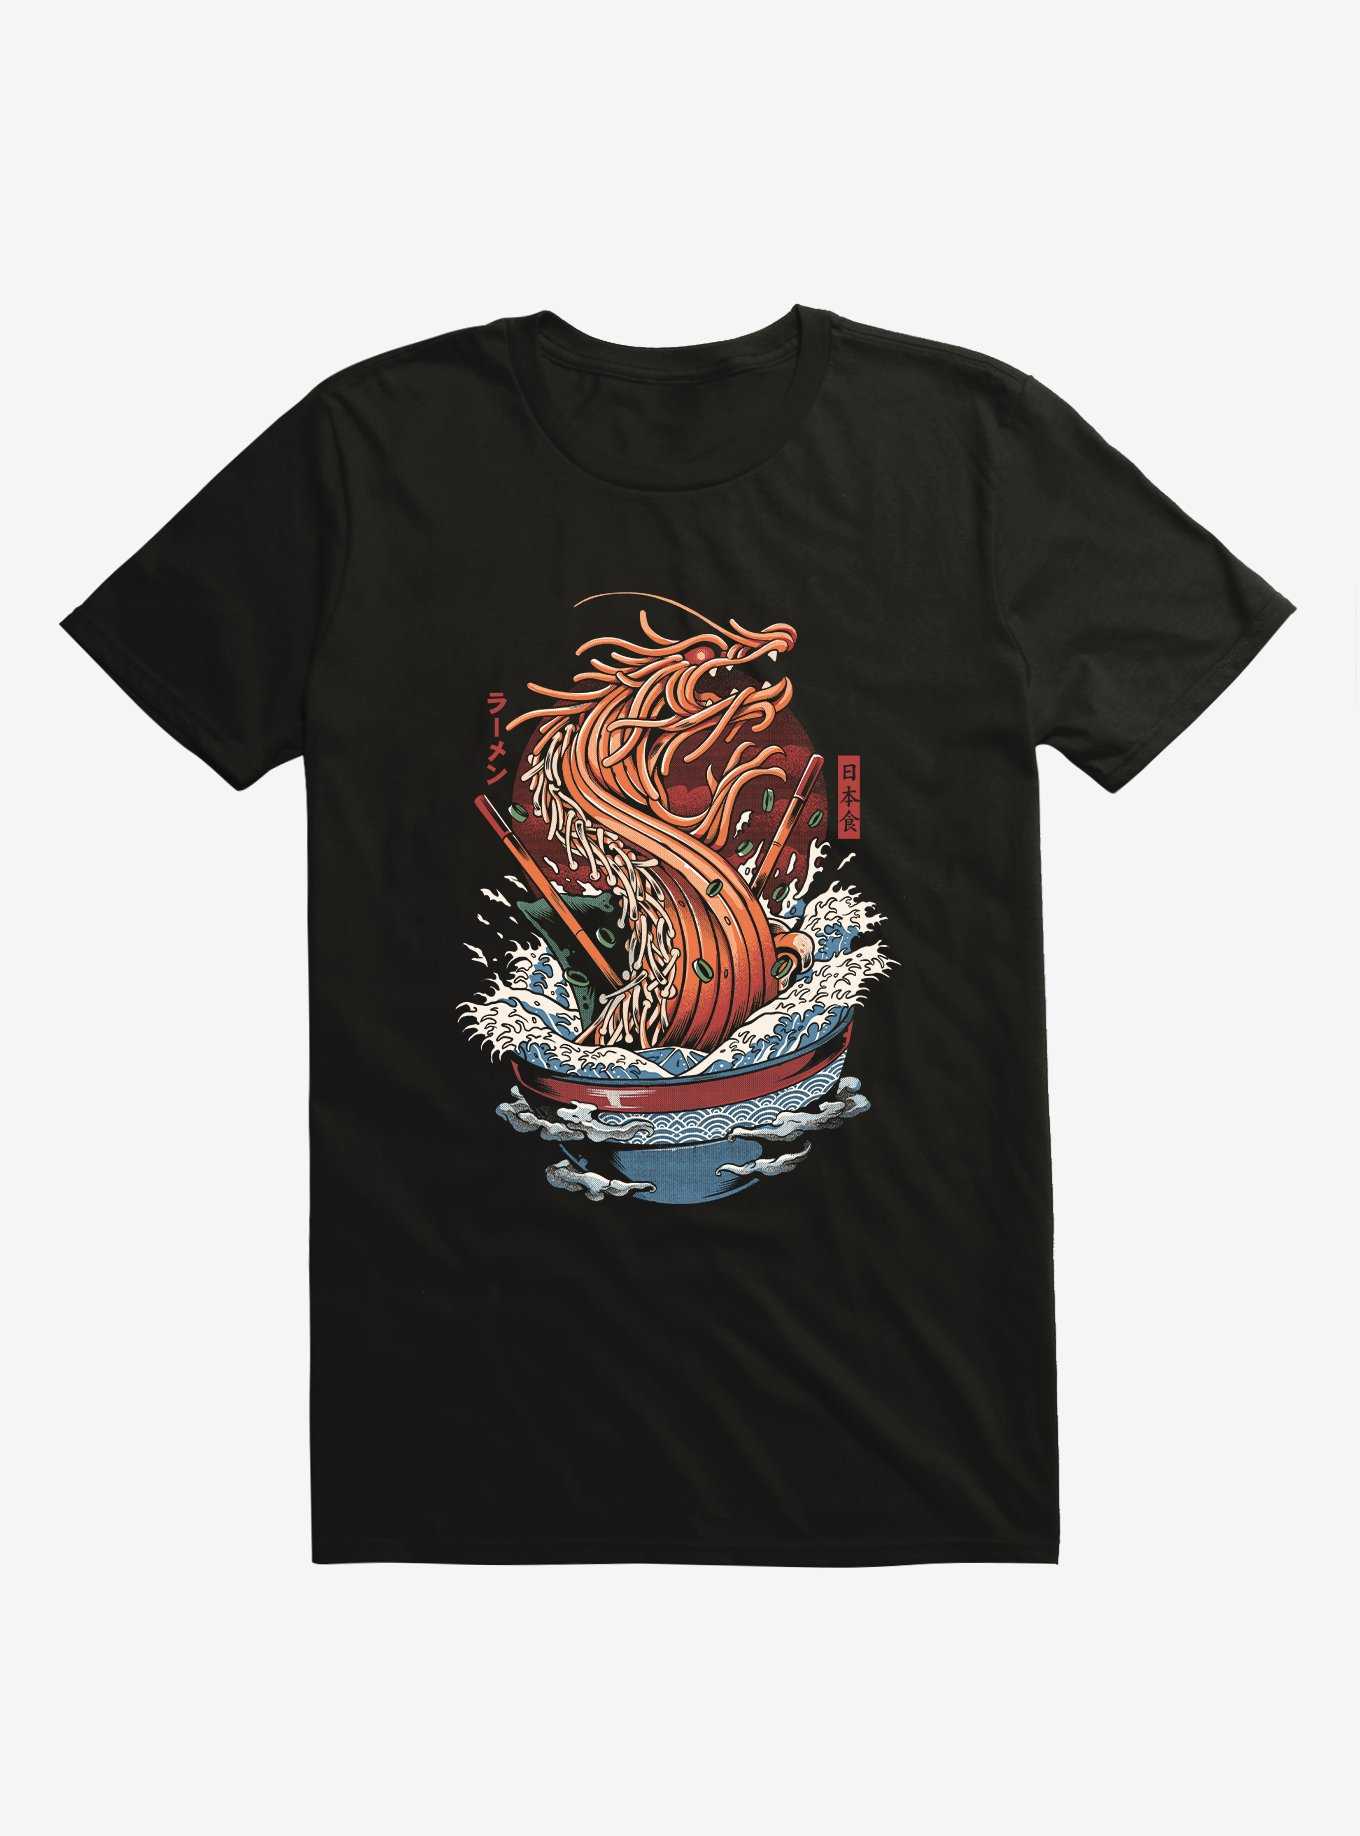 Ramen Dragon Noodles Black T-Shirt, , hi-res